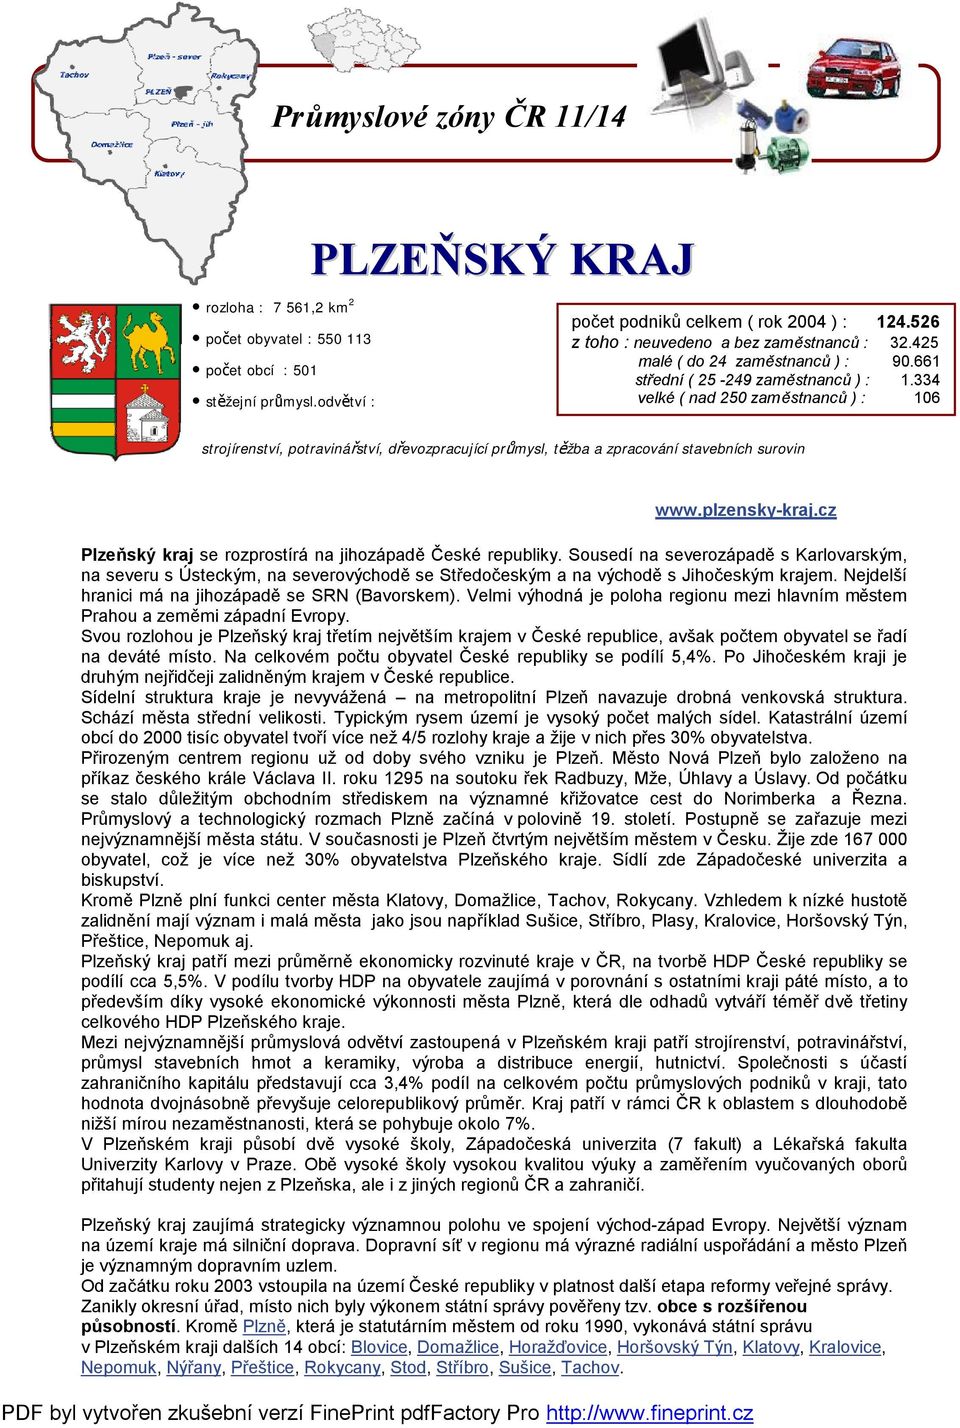 334 velké ( nad 250 zaměstnanců ) : 106 strojírenství, potravinářství, dřevozpracující průmysl, těžba a zpracování stavebních surovin www.plzensky-kraj.